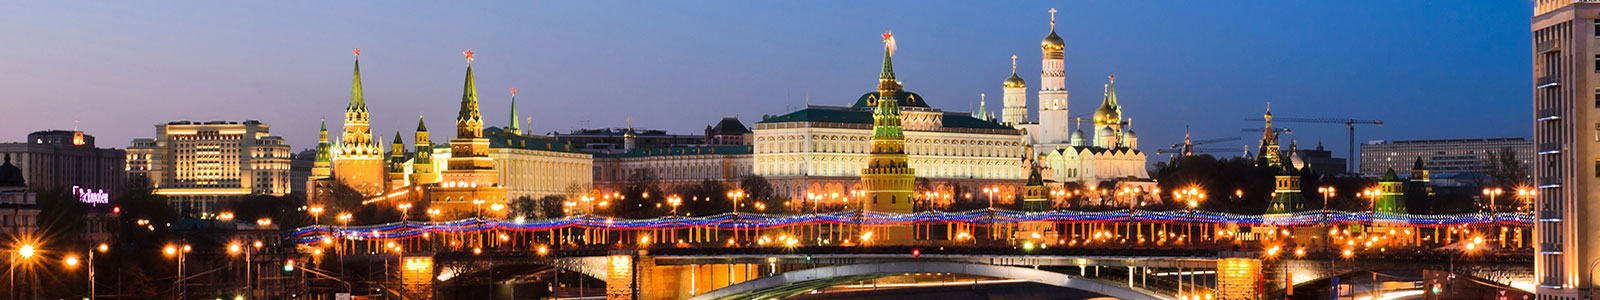 №1749 - Панорама вечерней Москвы